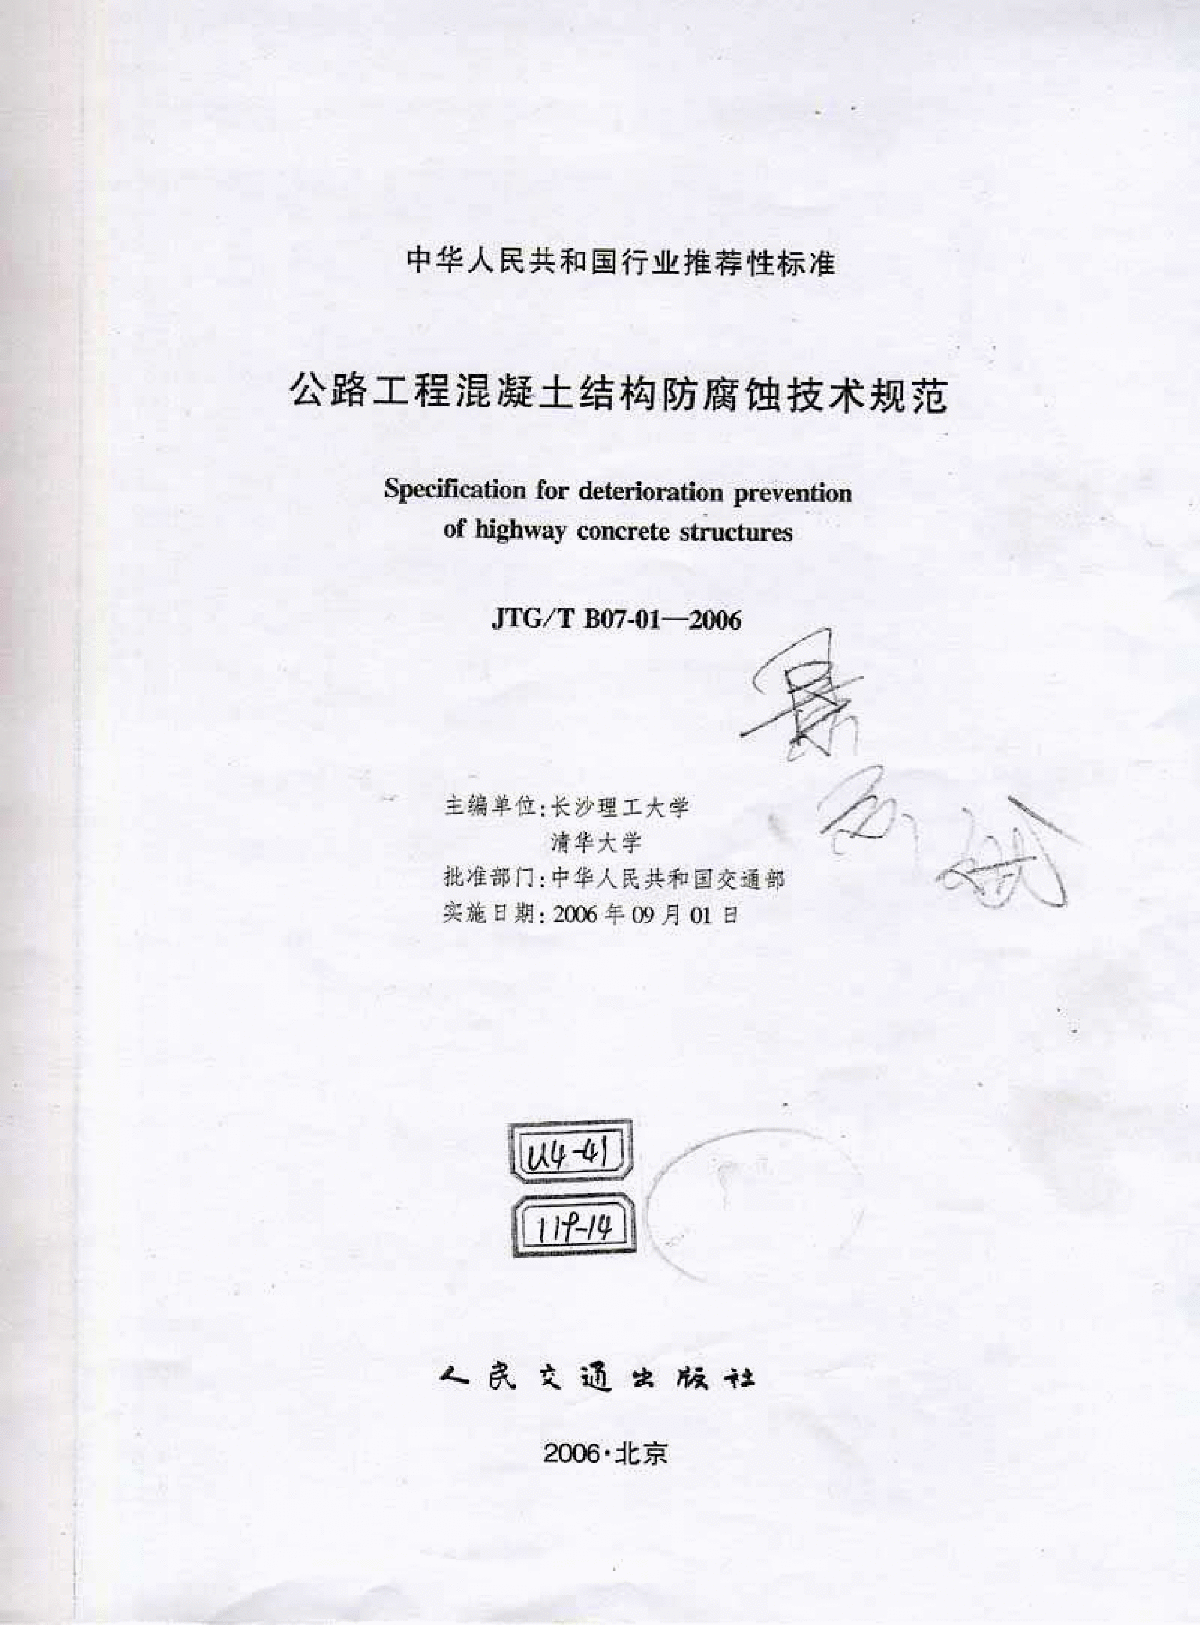 《公路工程混凝土结构防腐蚀技术规范》(JTG∕TB07-01-2006)